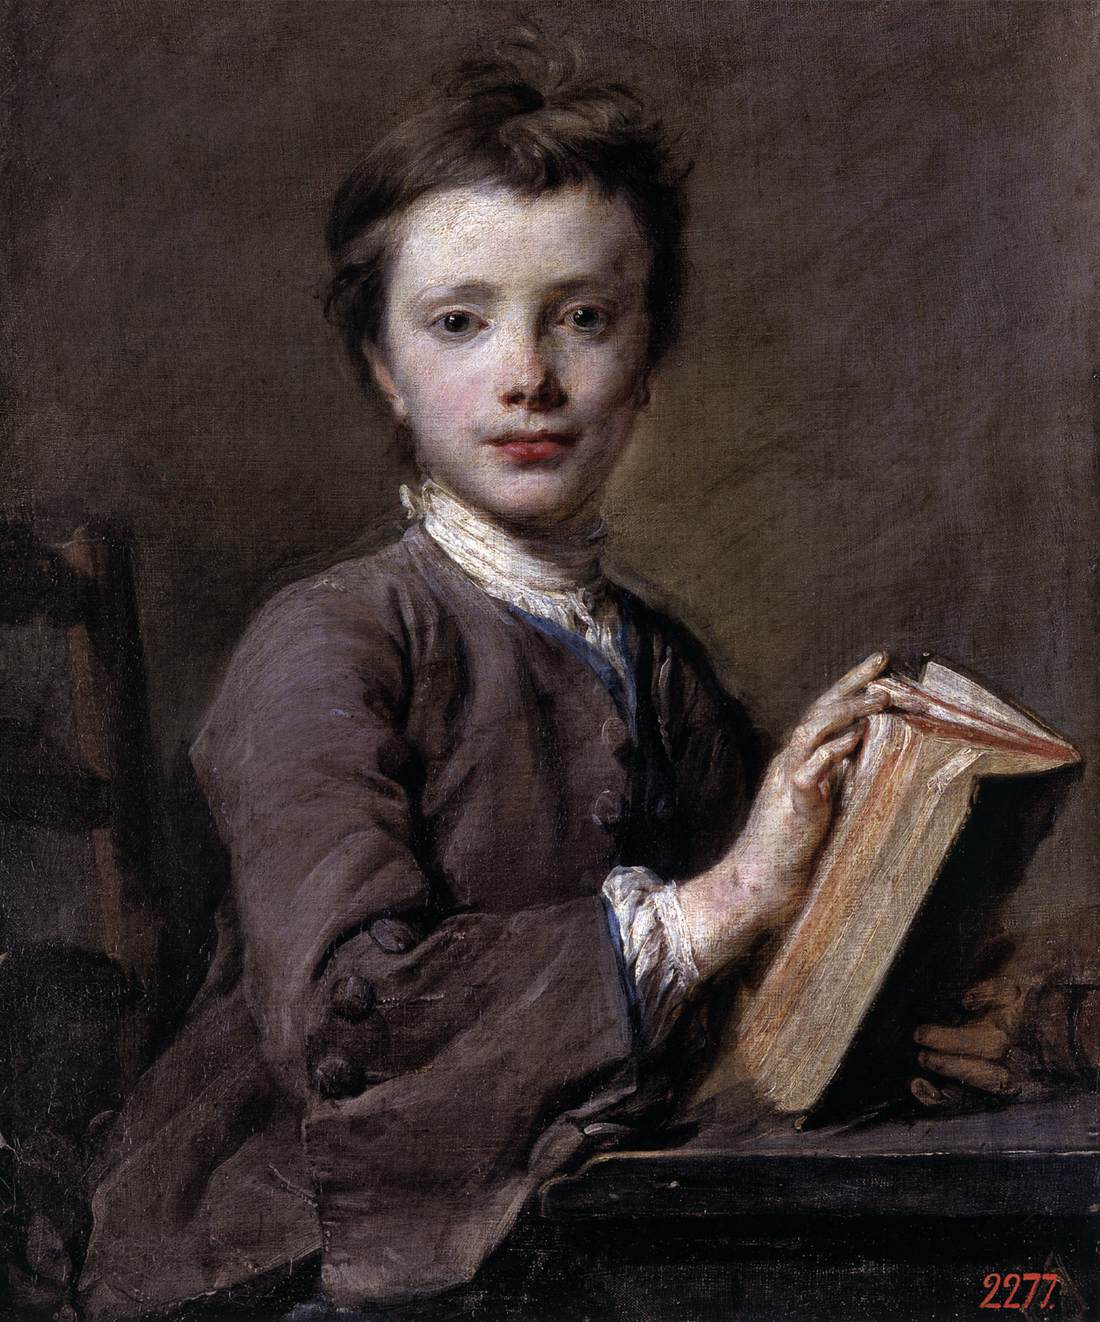 Ritratto di un bambino con un libro